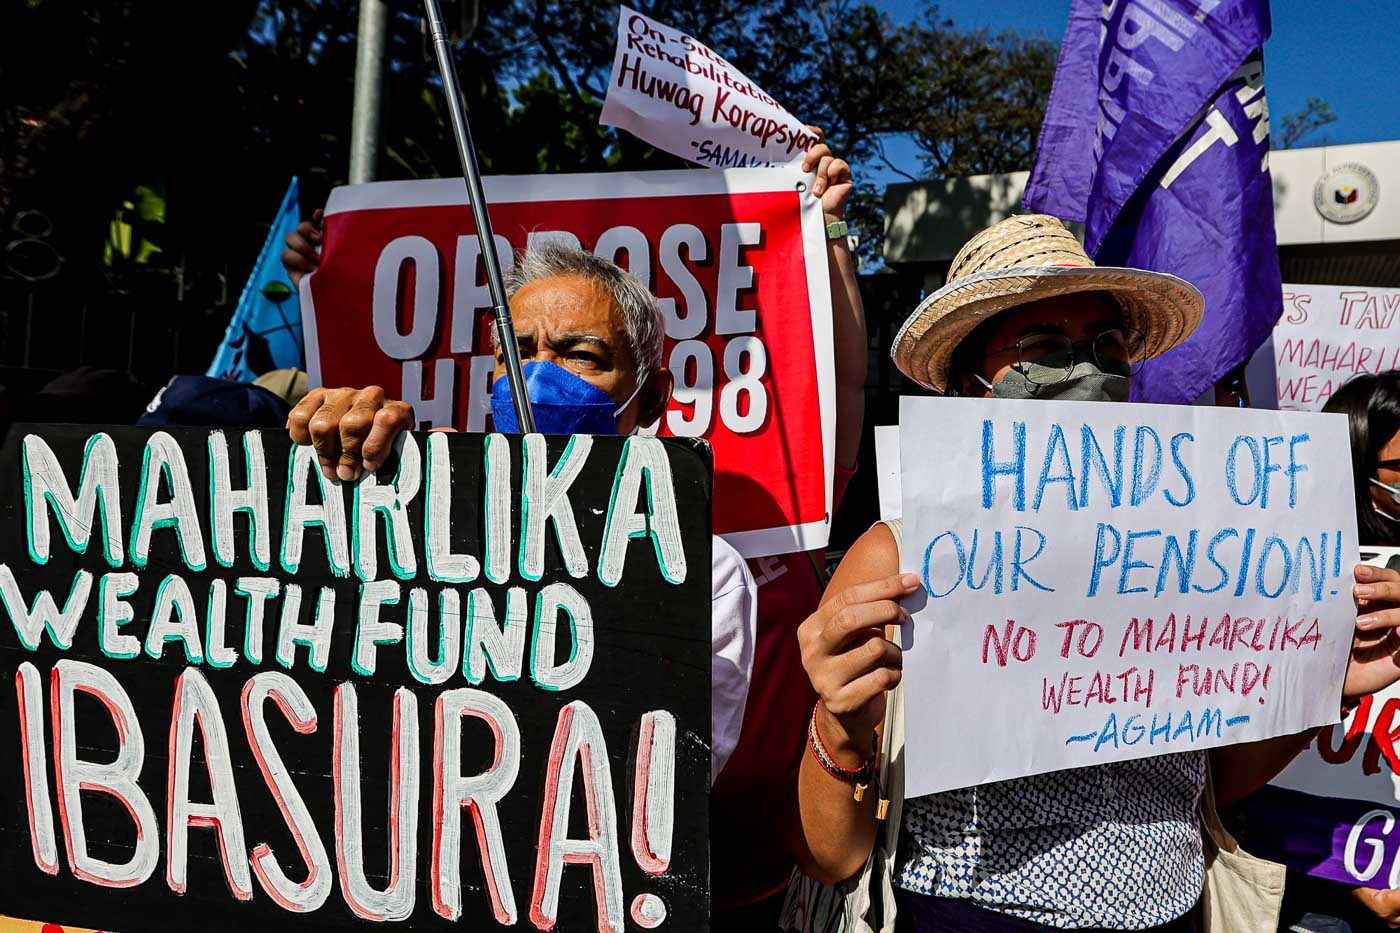 Maharlika Wealth Fund bill booed in Cagayan de Oro